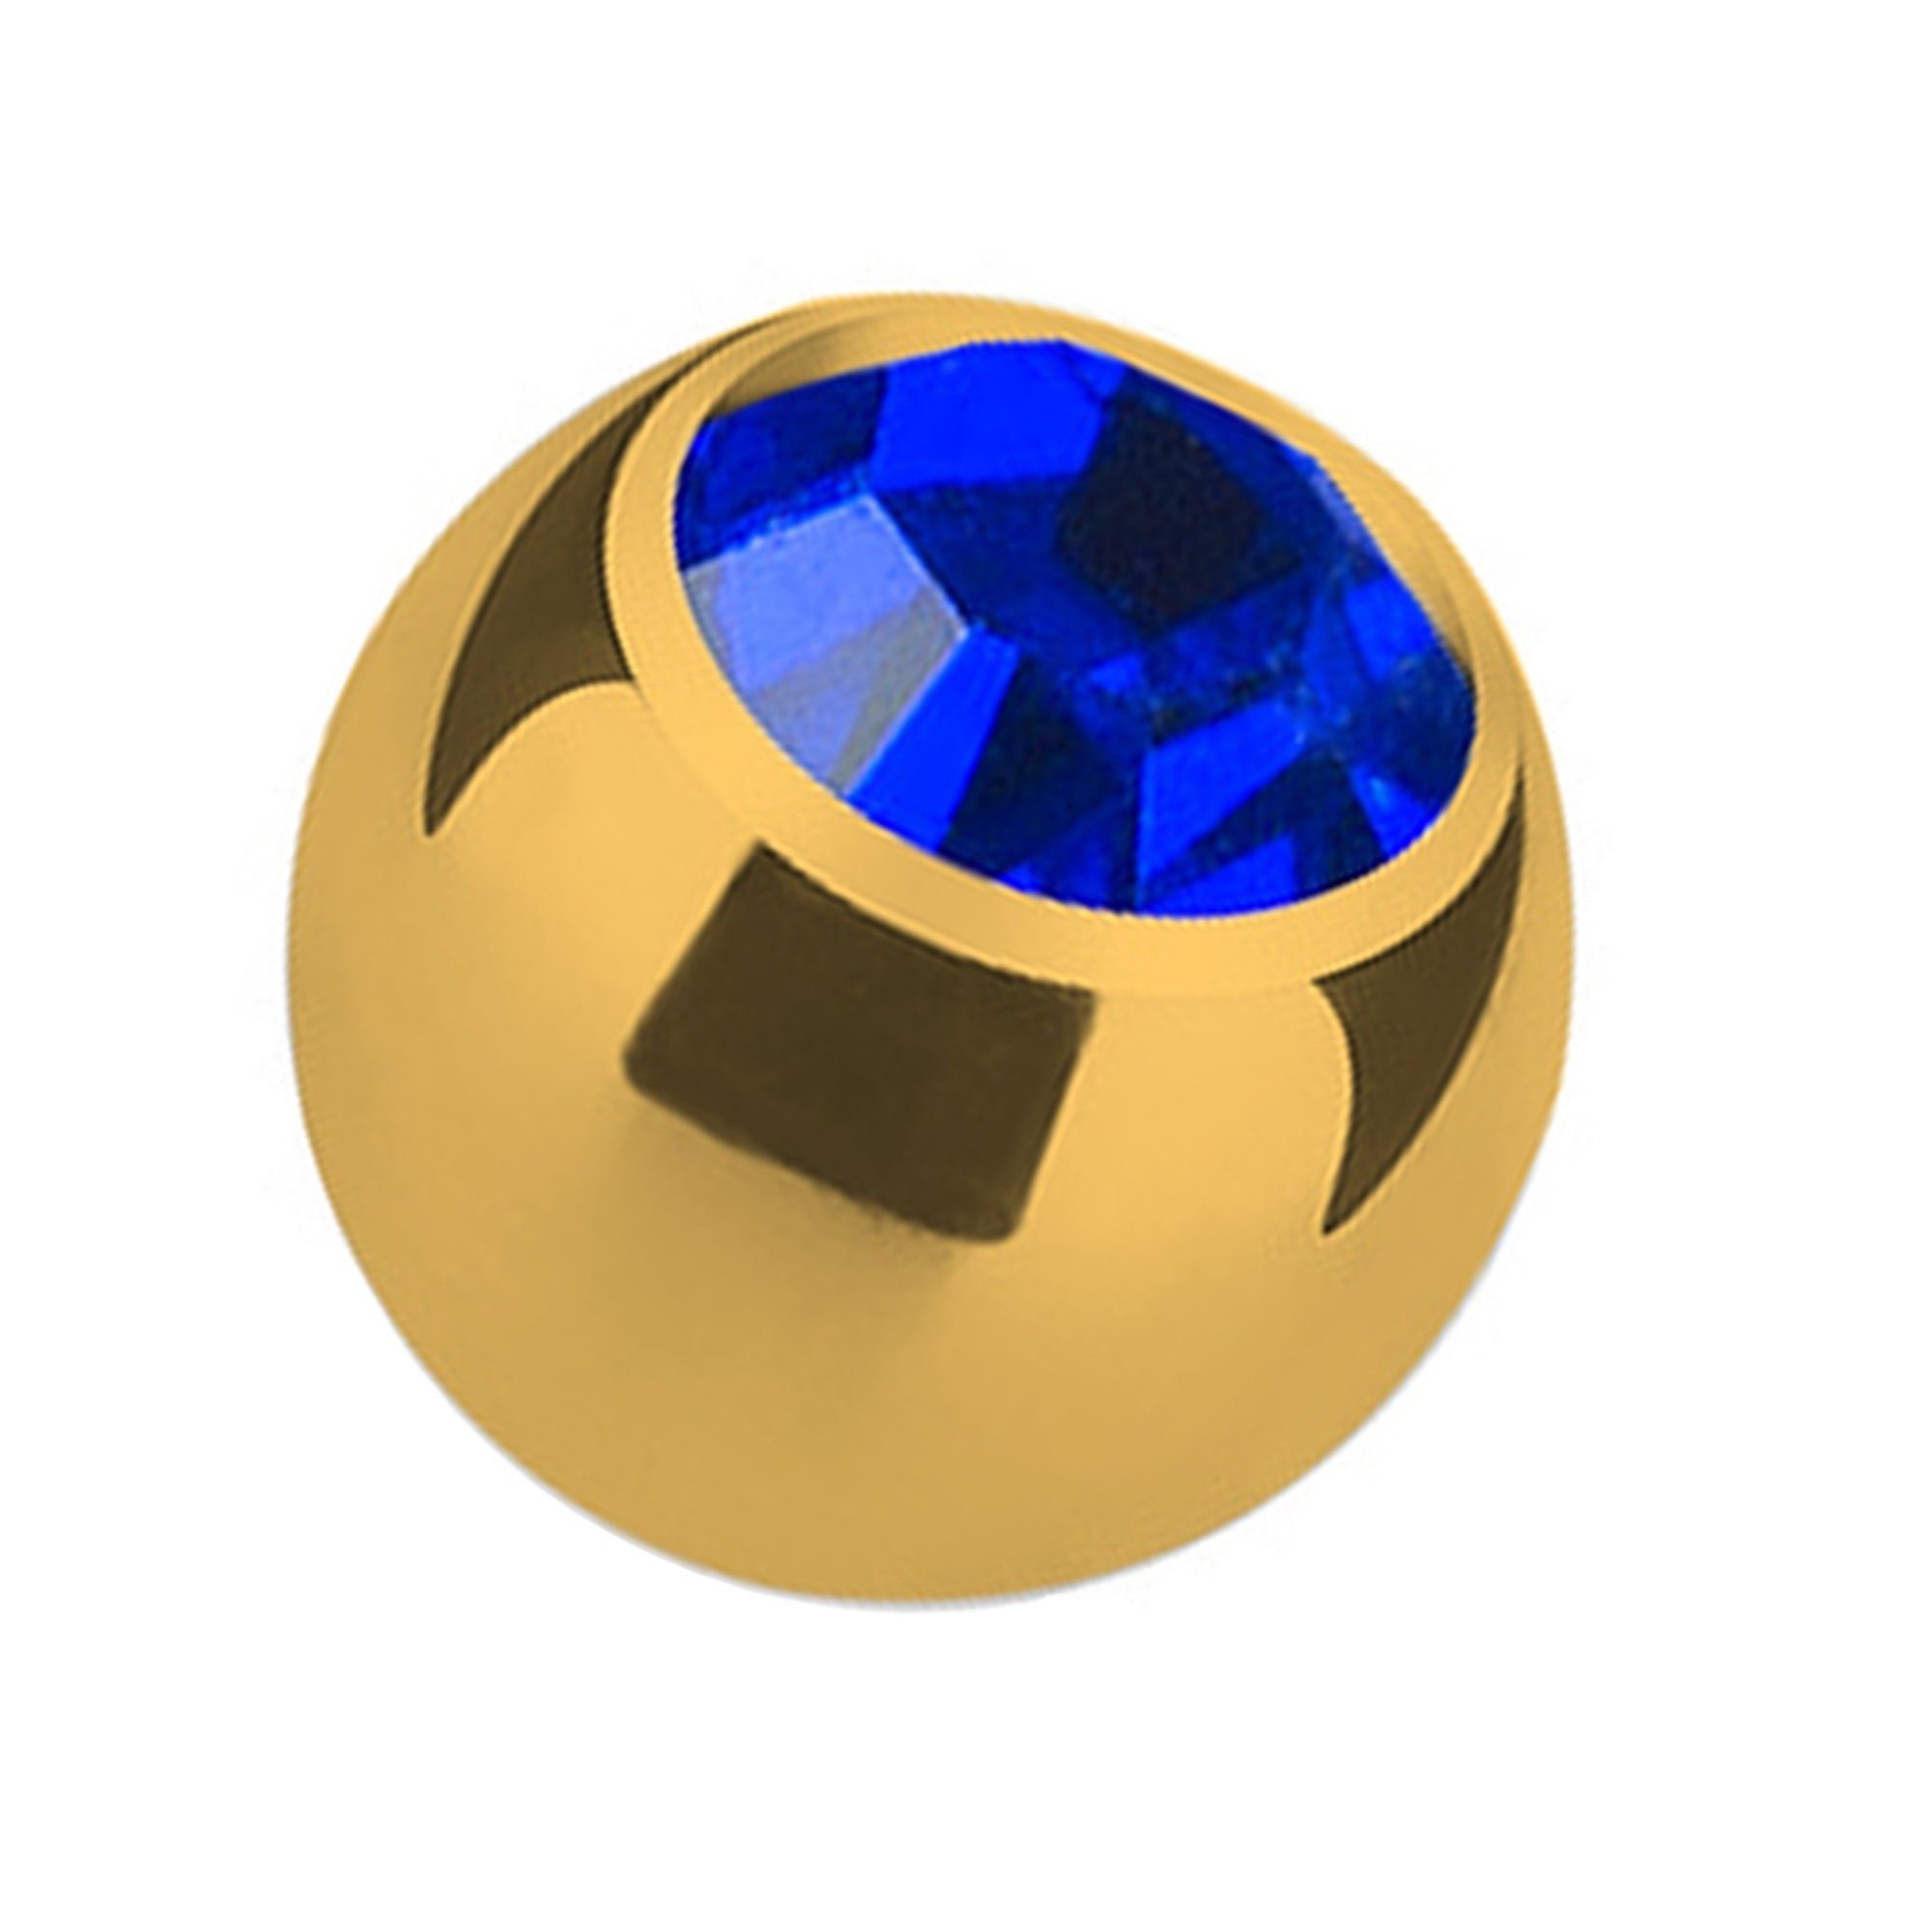 Taffstyle Piercing-Set Piercing Ersatz Schraubkugel Gold mit Kristall, Kugel Verschluss Verschlusskugel Ersatzteile Edelstahl Gold mit Strass Blau